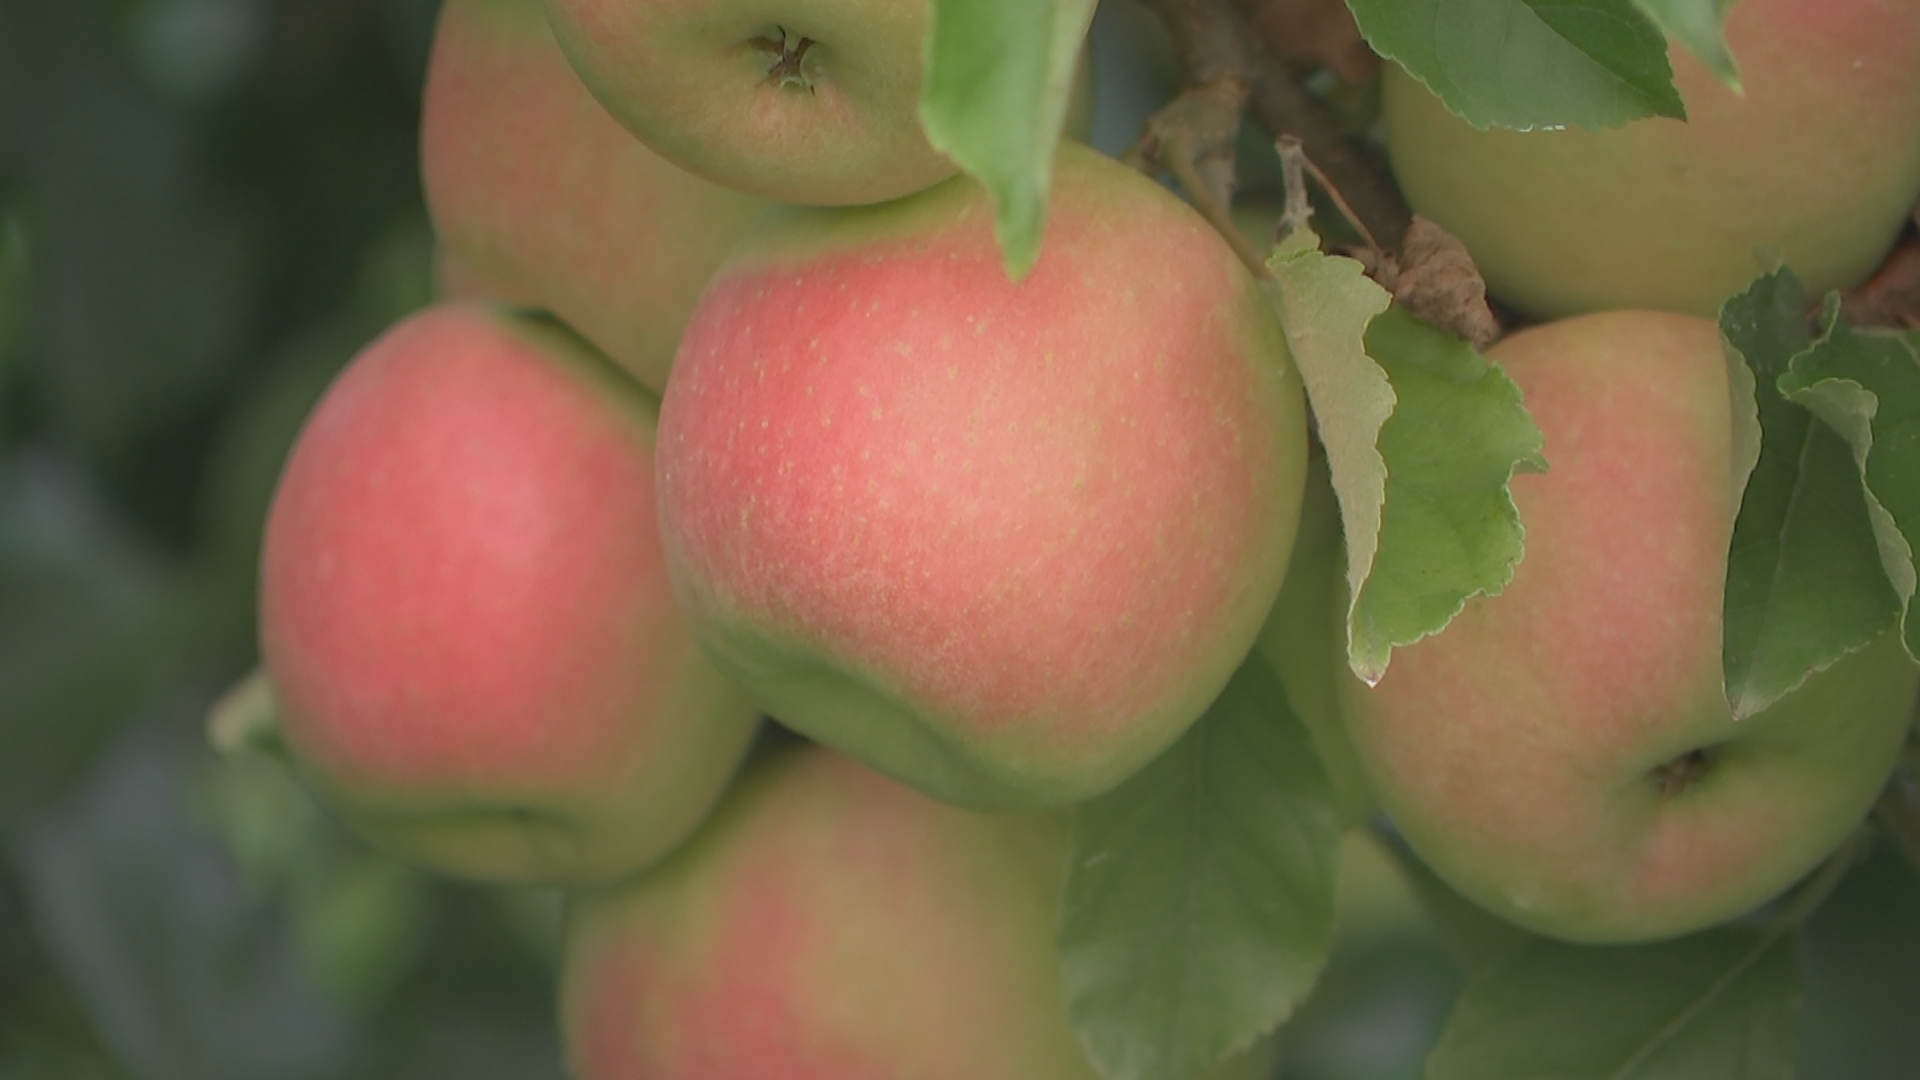 linvilla apple picking delaware county